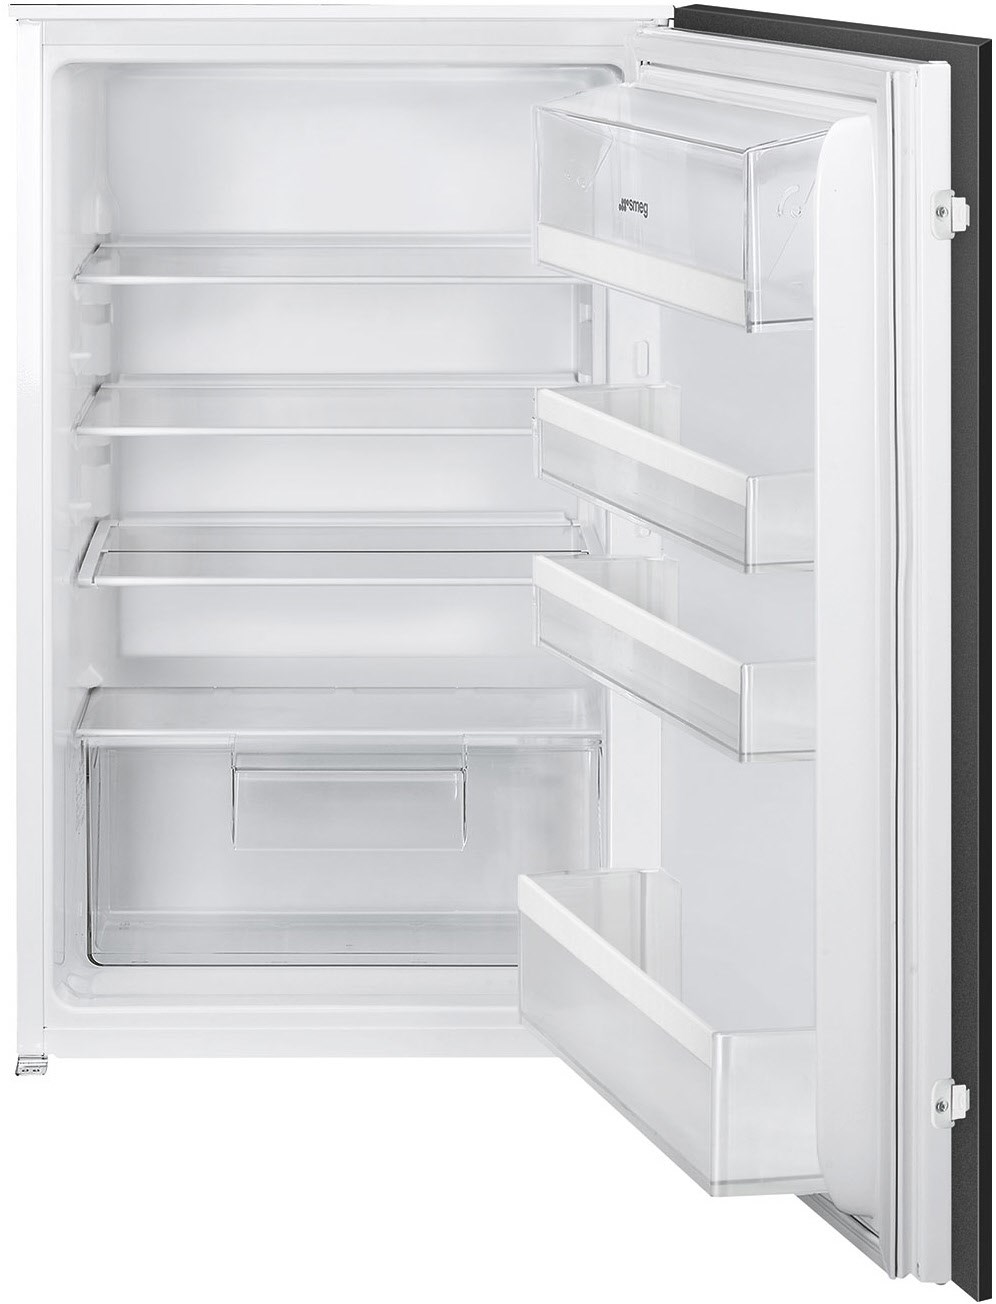 S4L090F Einbau-Kühlschrank weiß / F